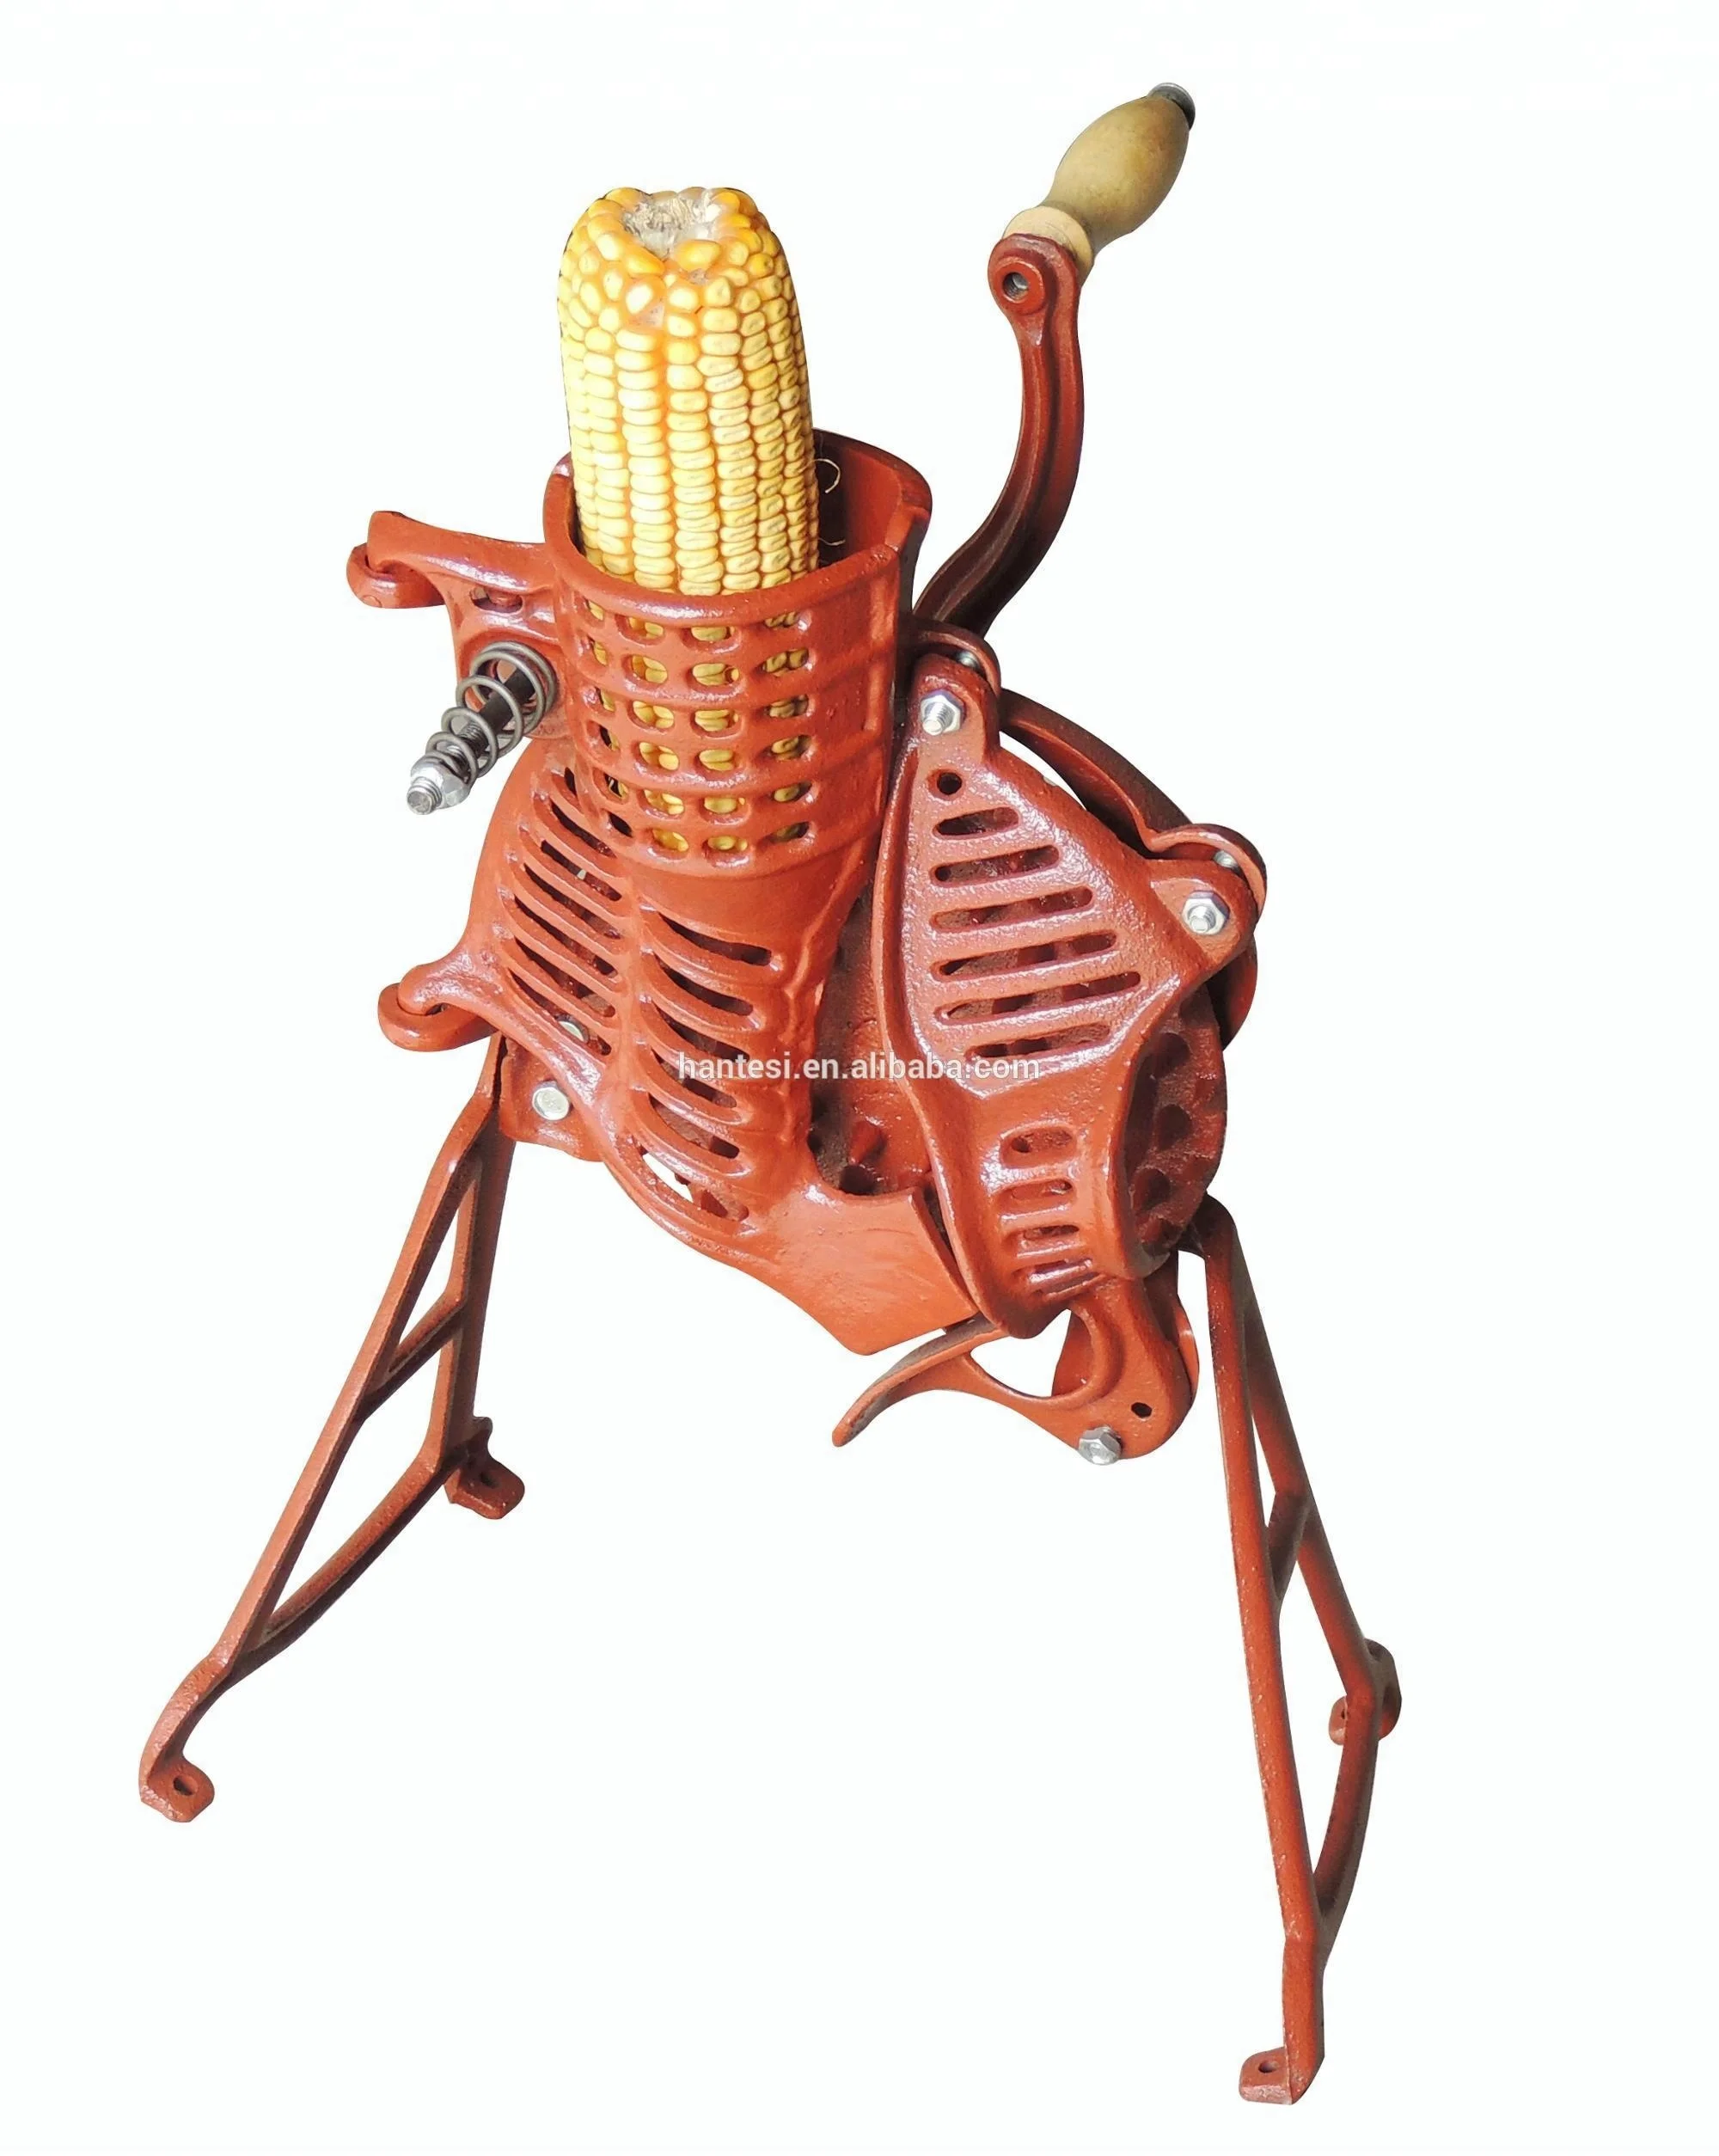 得価正規店】 トウモロコシ脱穀機 Buy Corn Shelle,Corn Thresher,Corn Peeler Product 